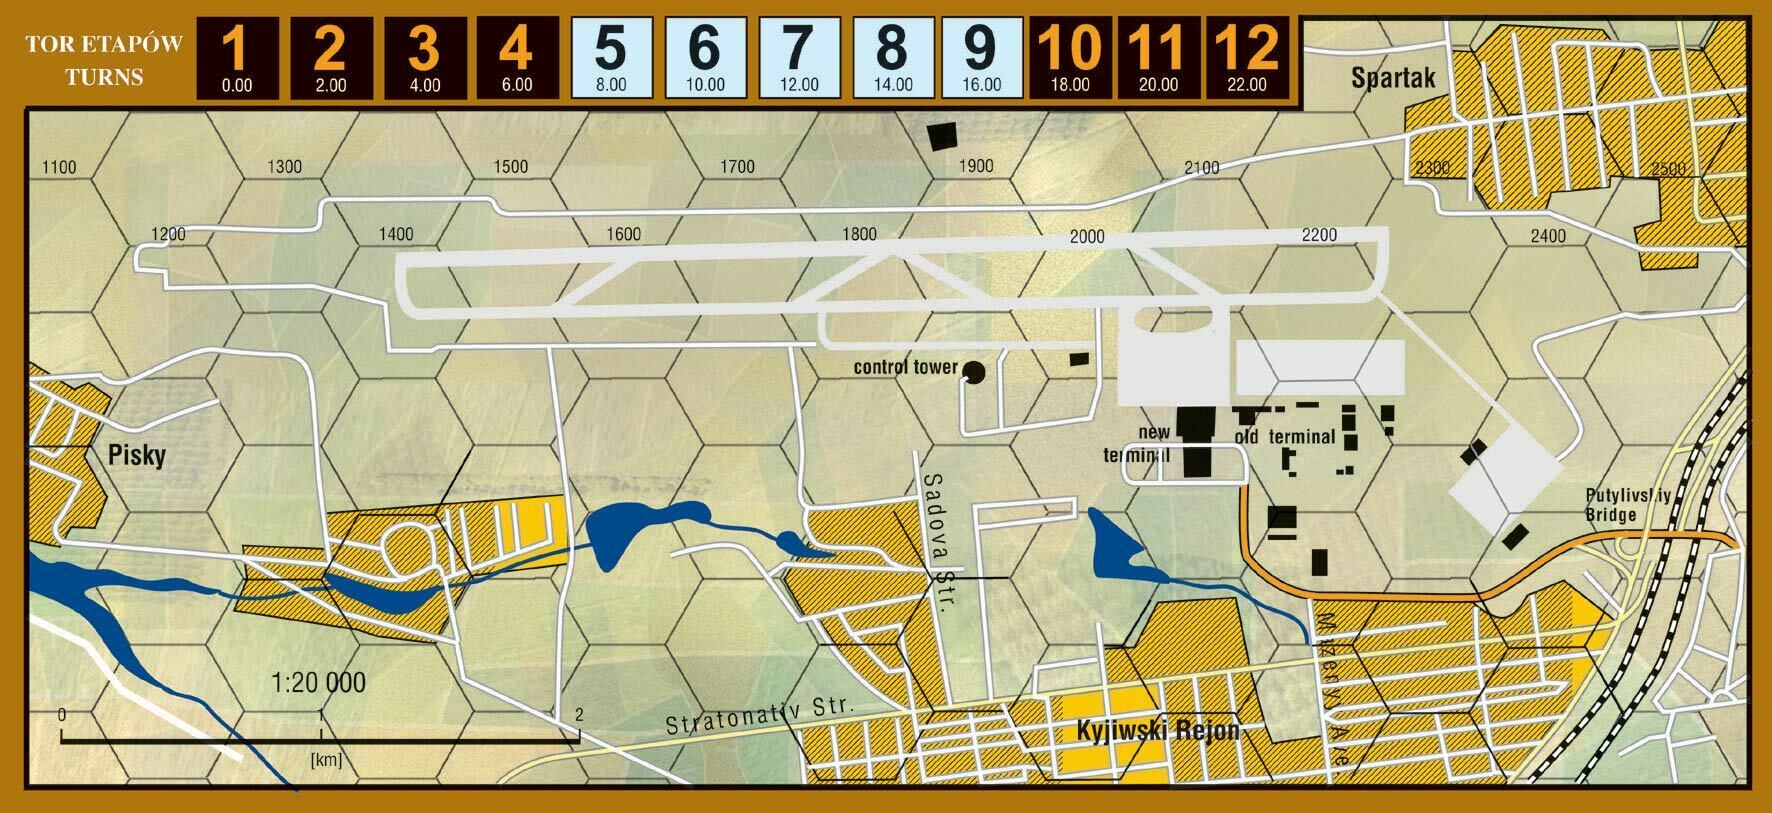 Mapa do gry wojennej Donieck 2022 na Ukrainie